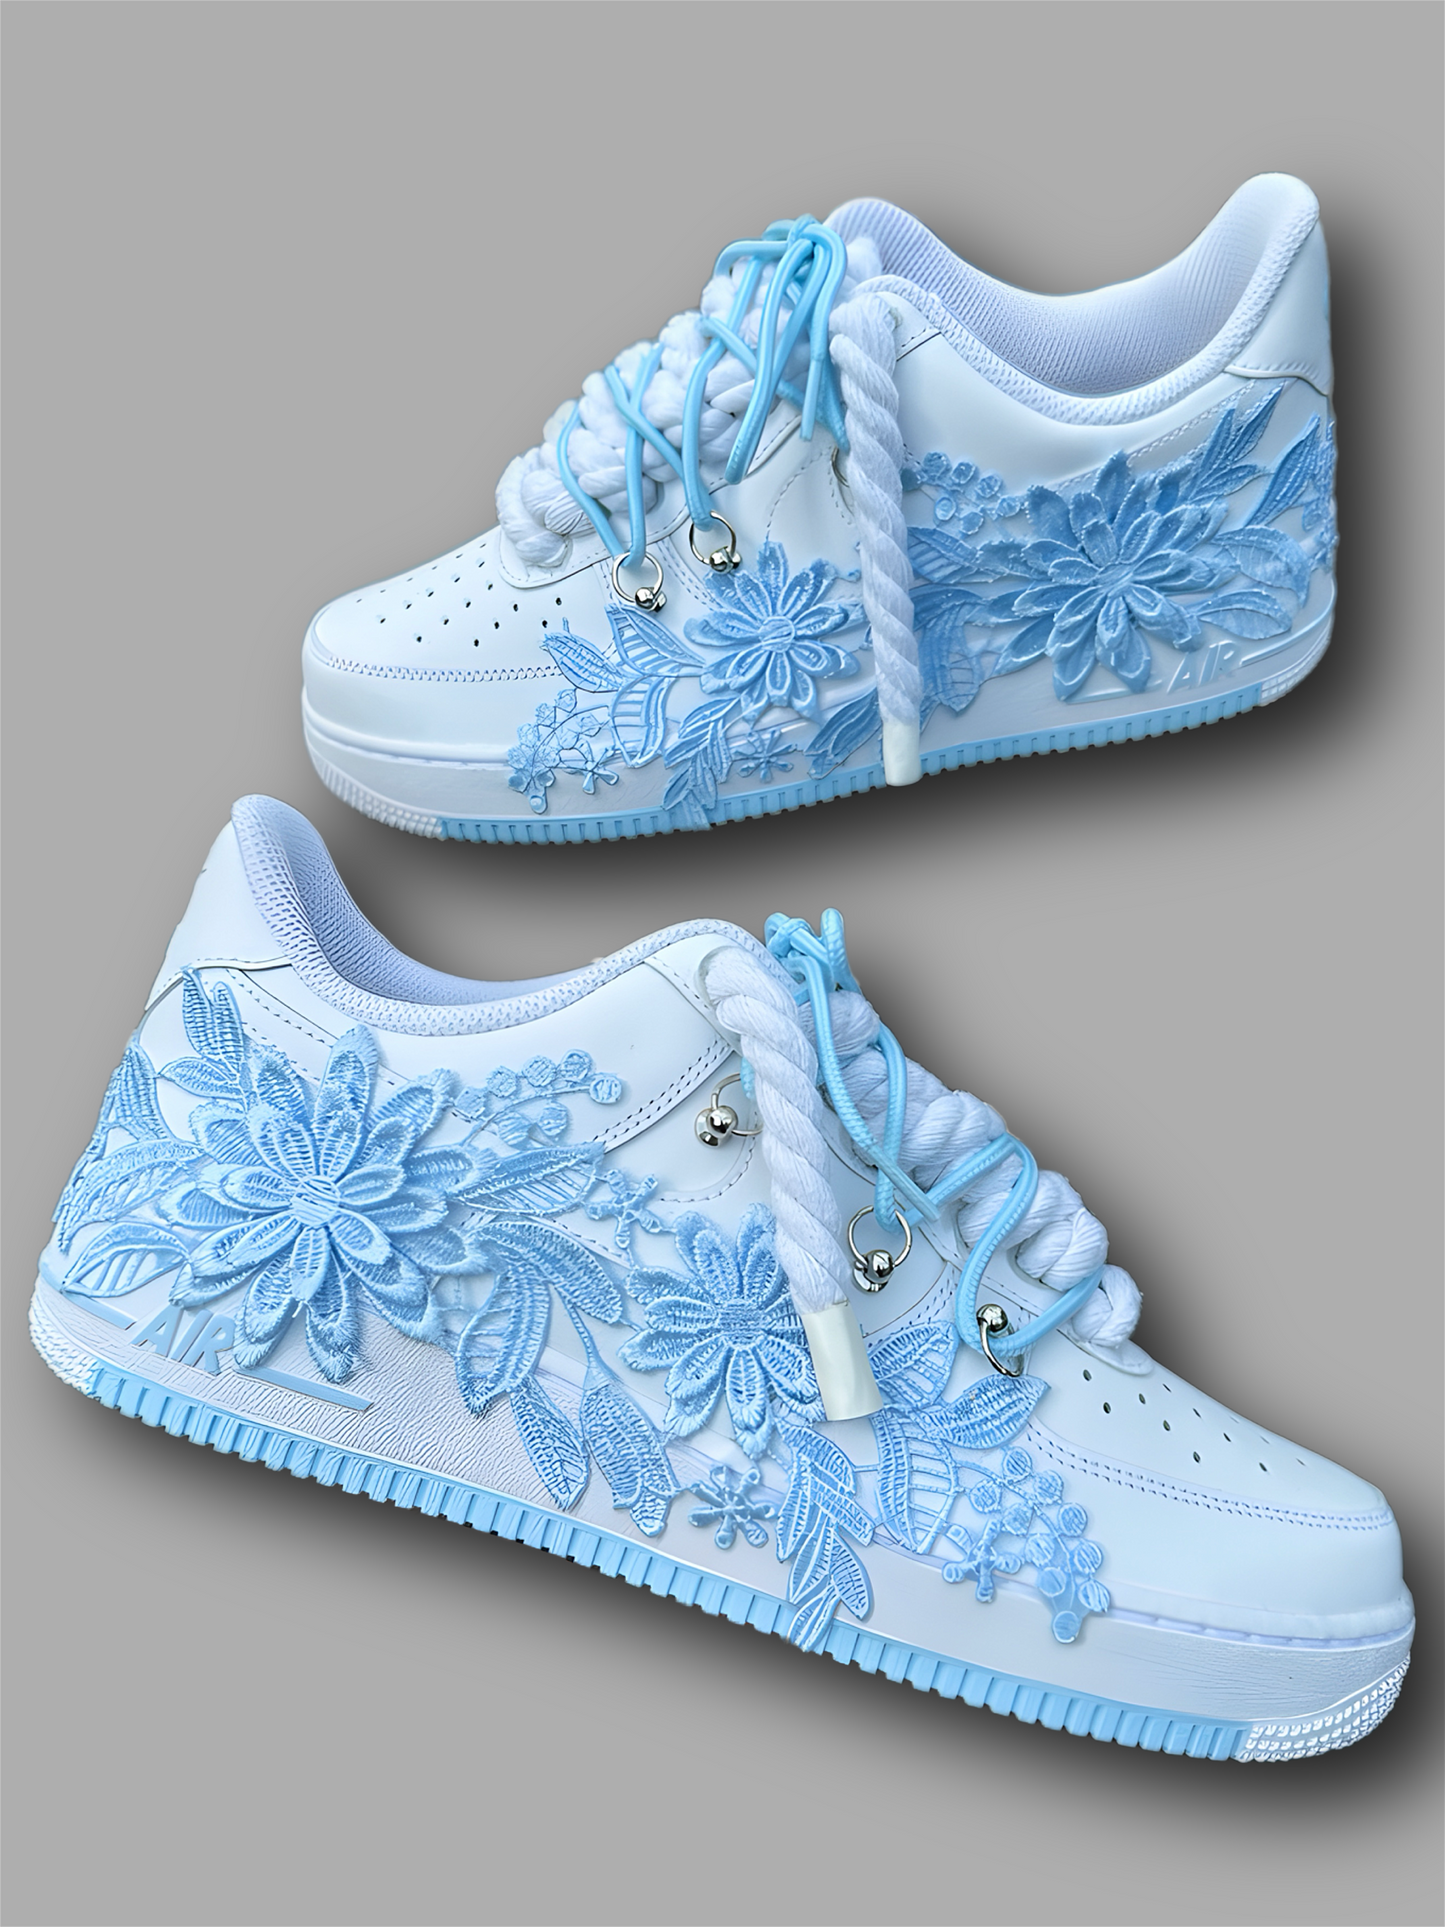 Light blue Floral Custom AF1